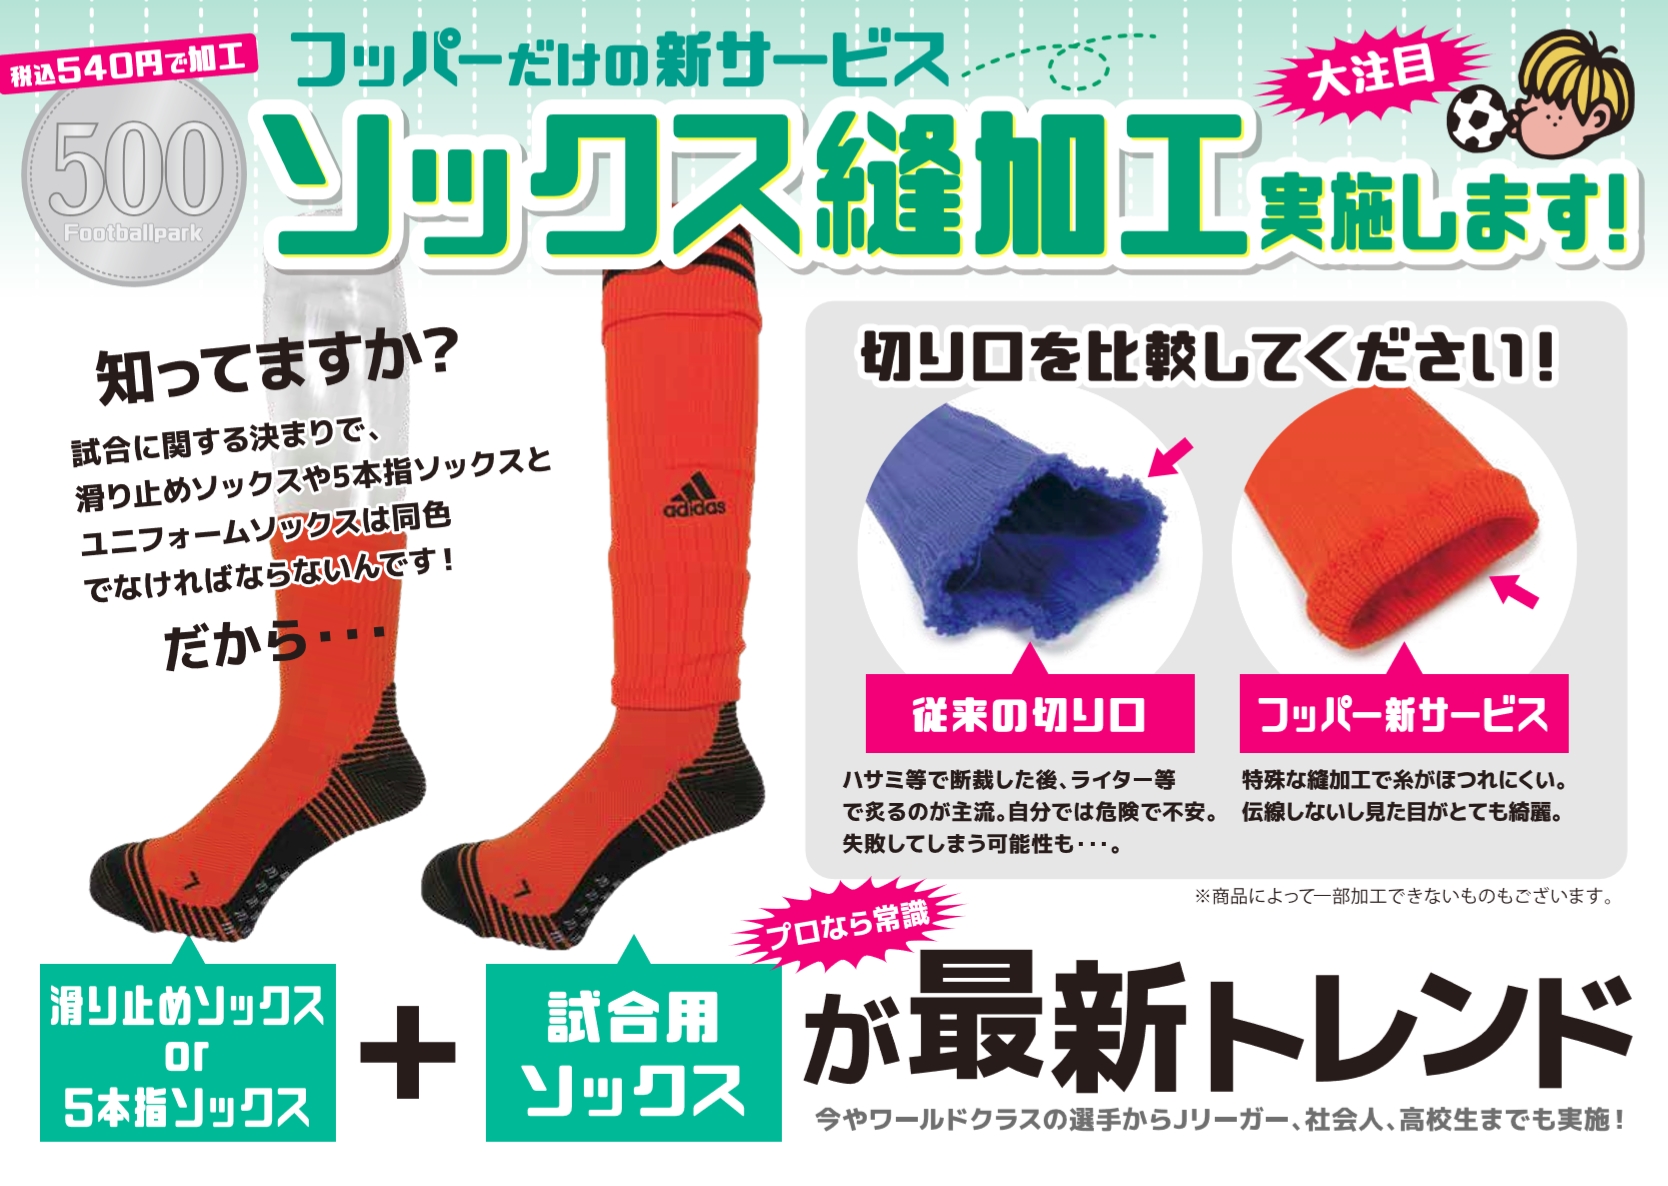 フットボールパークで サッカーソックス縫加工始めました 埼玉サッカー通信 埼玉サッカーを応援するwebマガジン